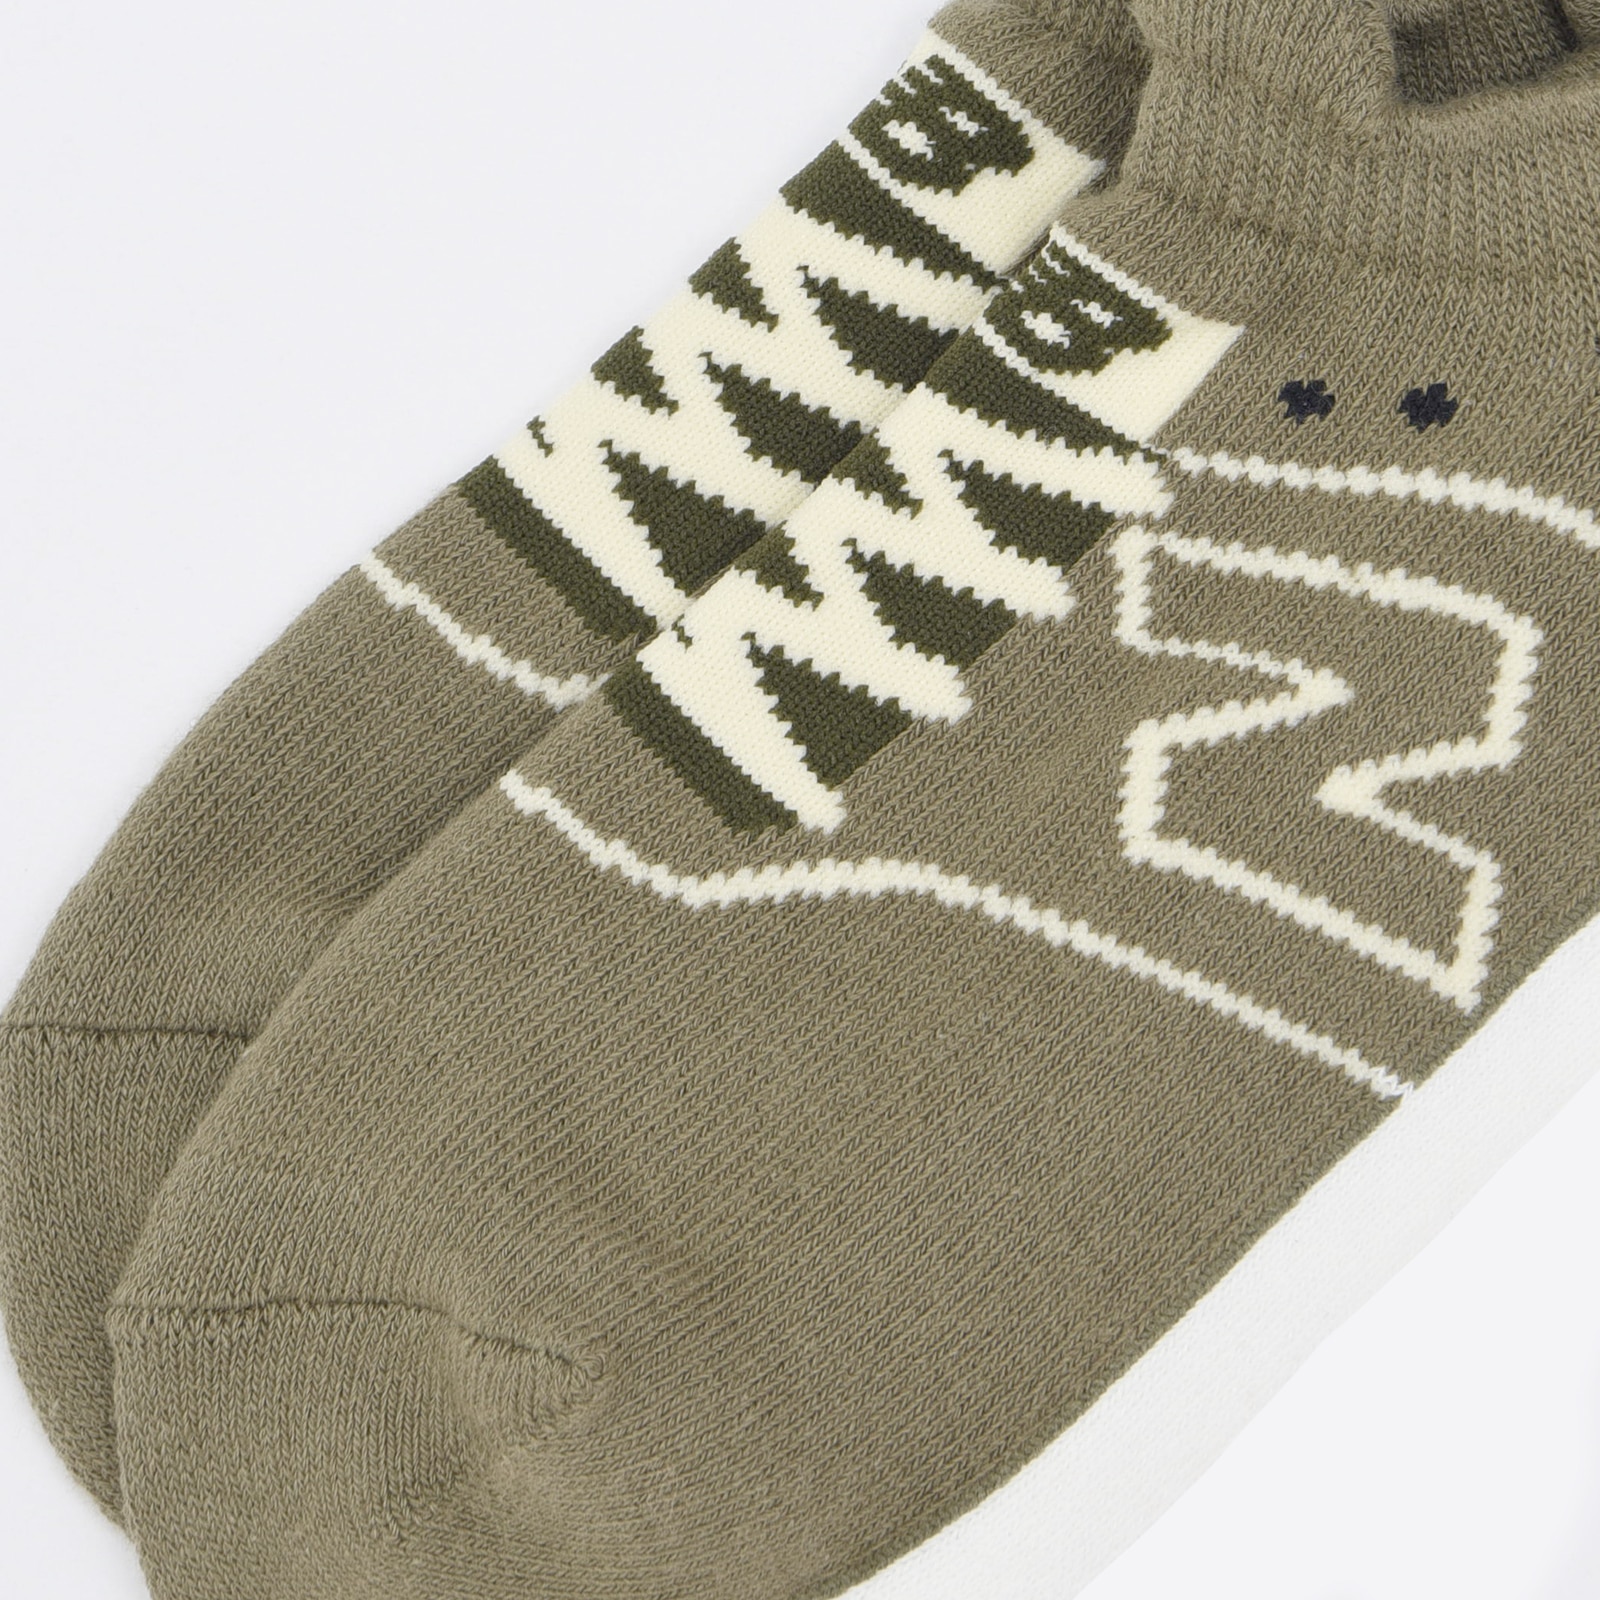 Sneaker pattern pile socks